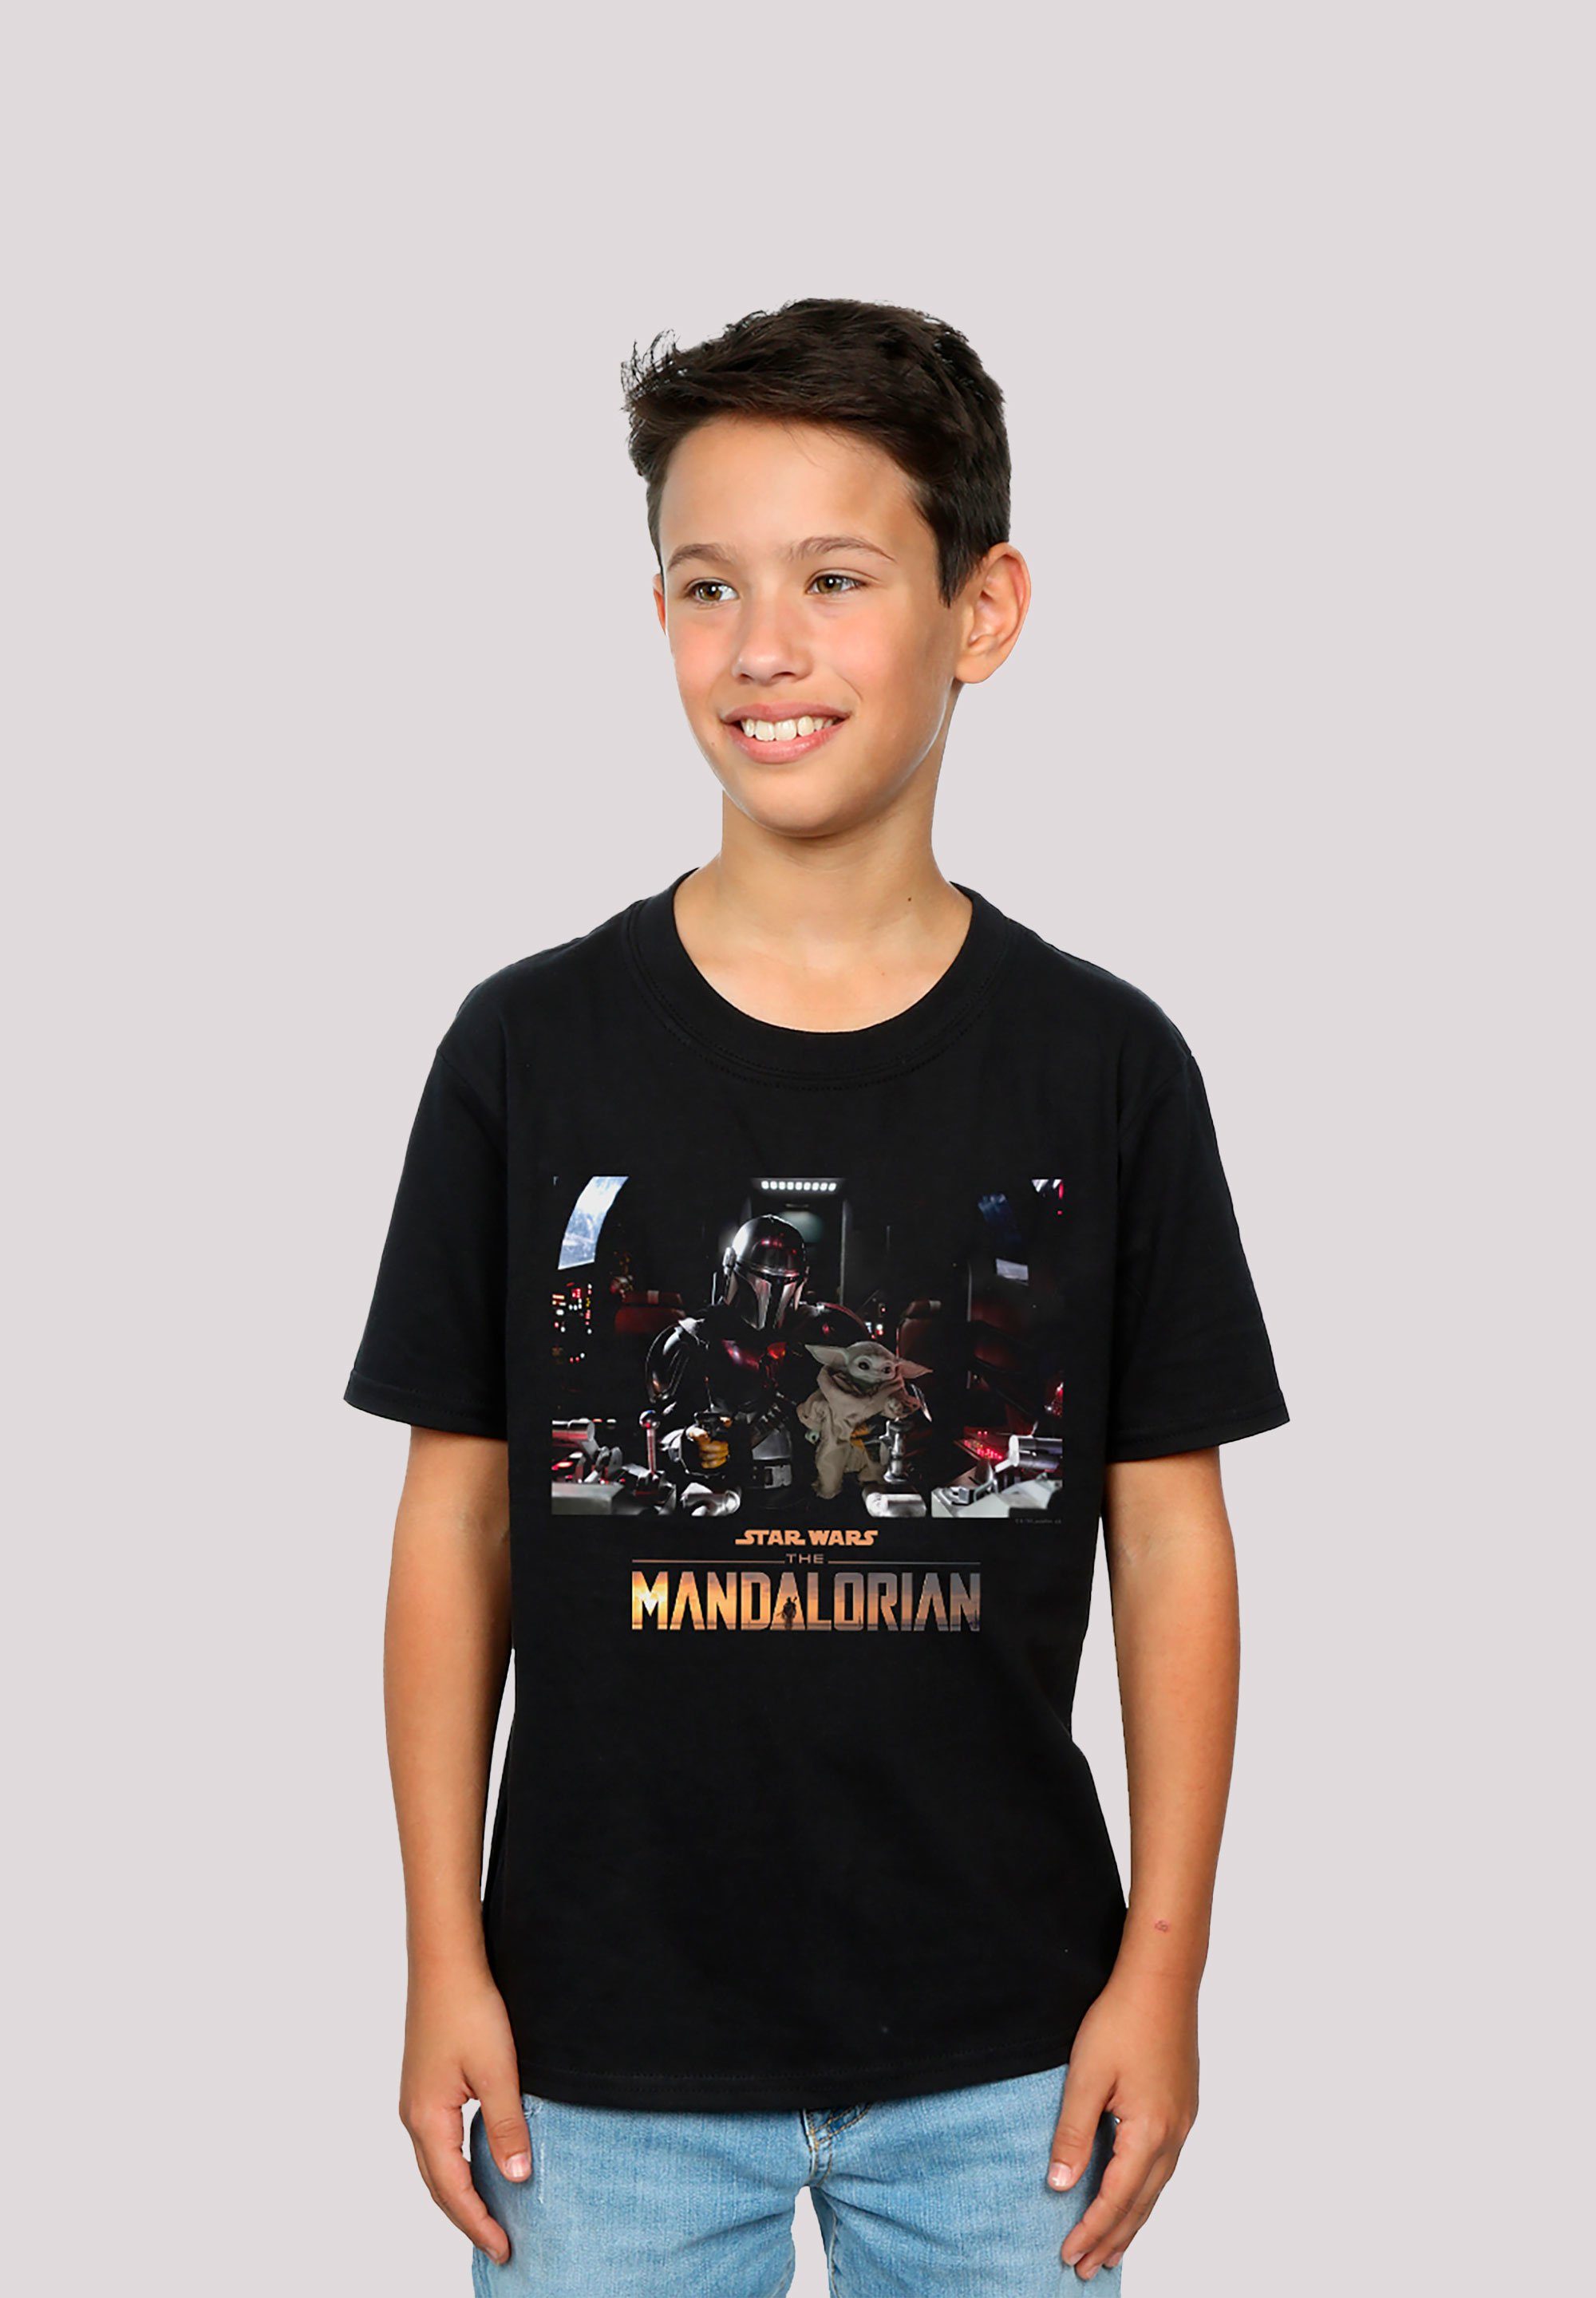 Print Wars der The Premium Star F4NT4STIC Krieg - Mandalorian T-Shirt Sterne